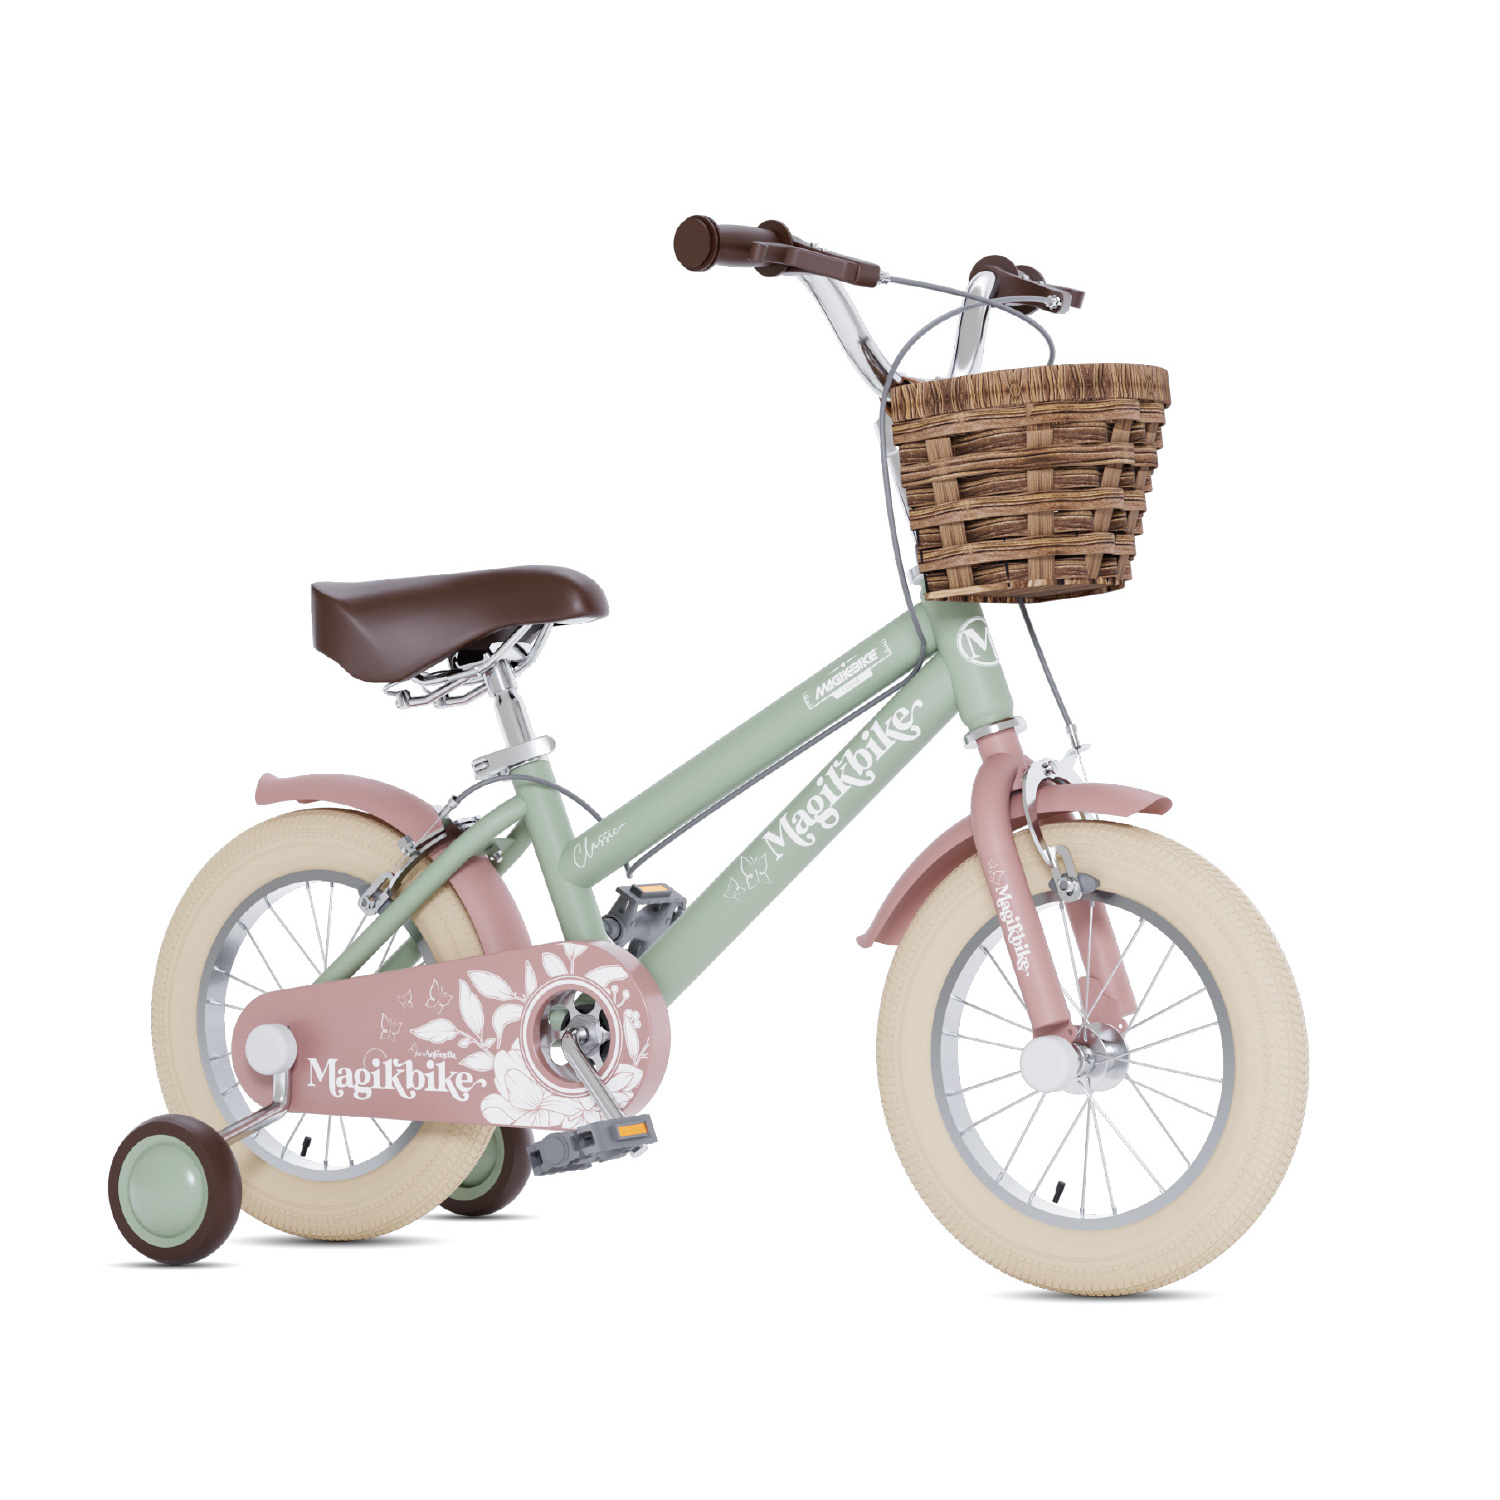 Bicicleta Niños 12 Pulgadas Magikbike Antonella 3-5 Años - verde - 